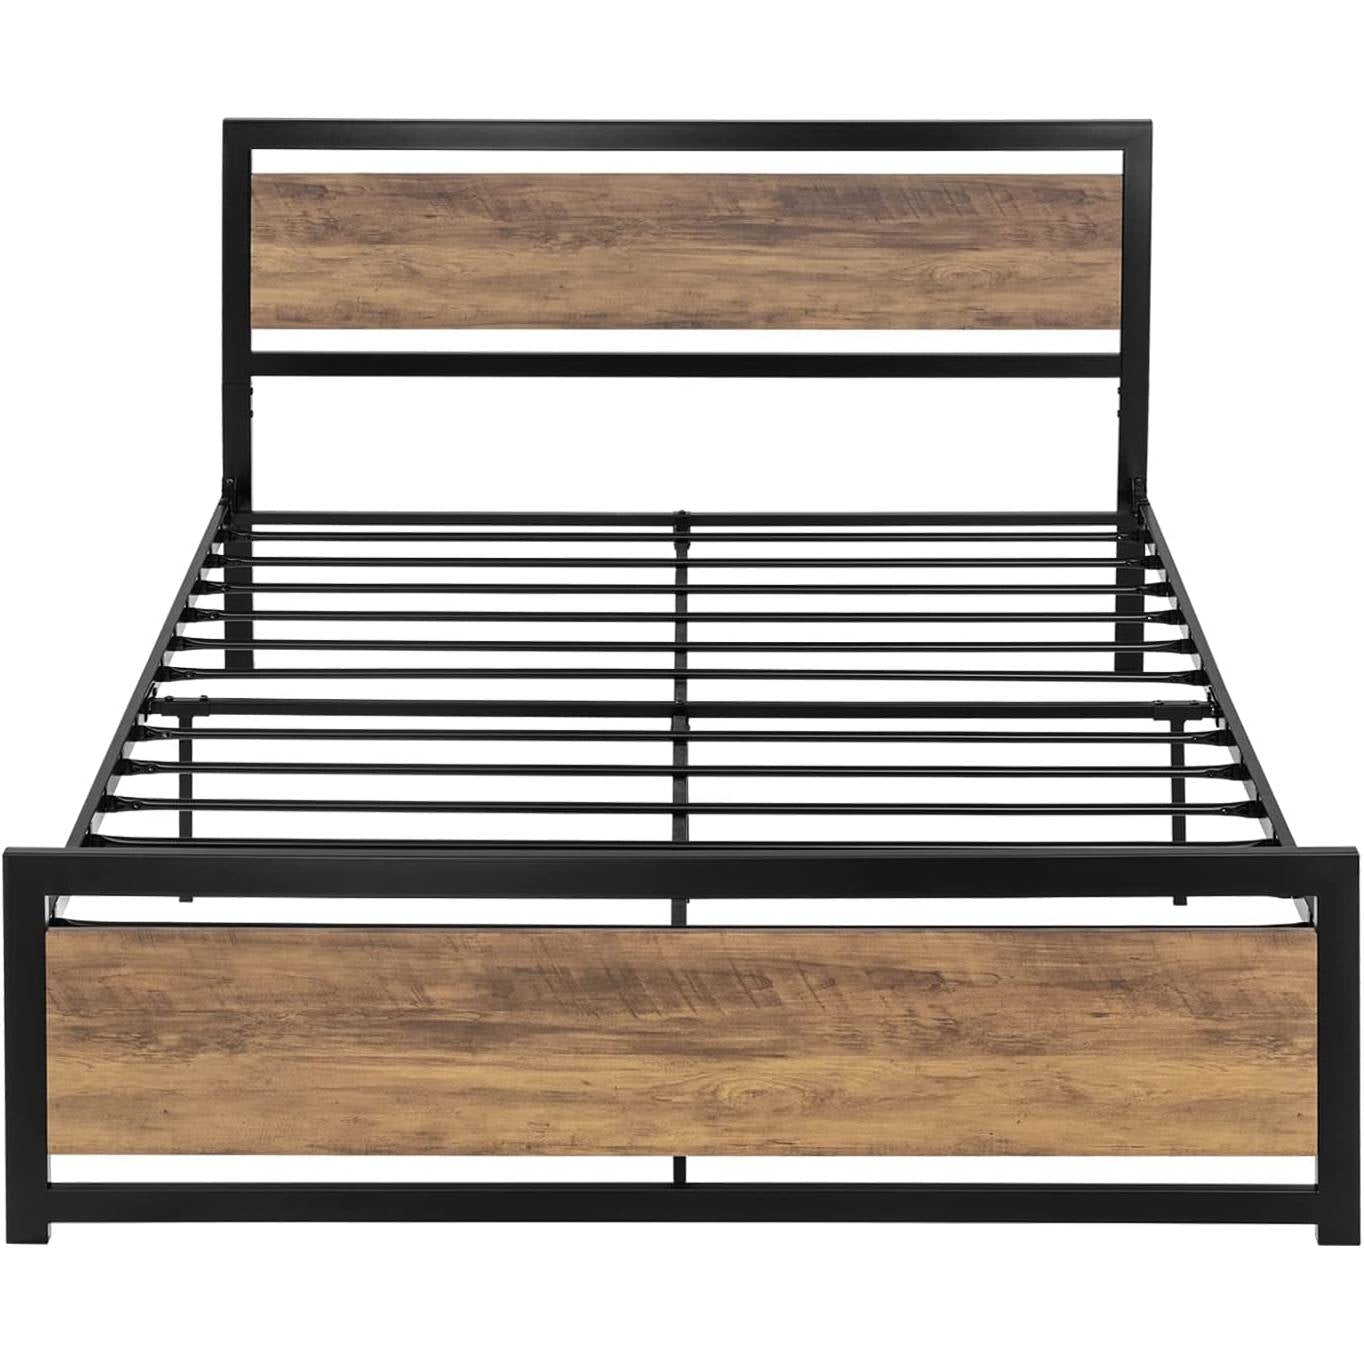 Bedroom > Bed Frames > Platform Beds - Full Metal Platform Bed Frame With Brown Wood Panel Headboard And Footboard